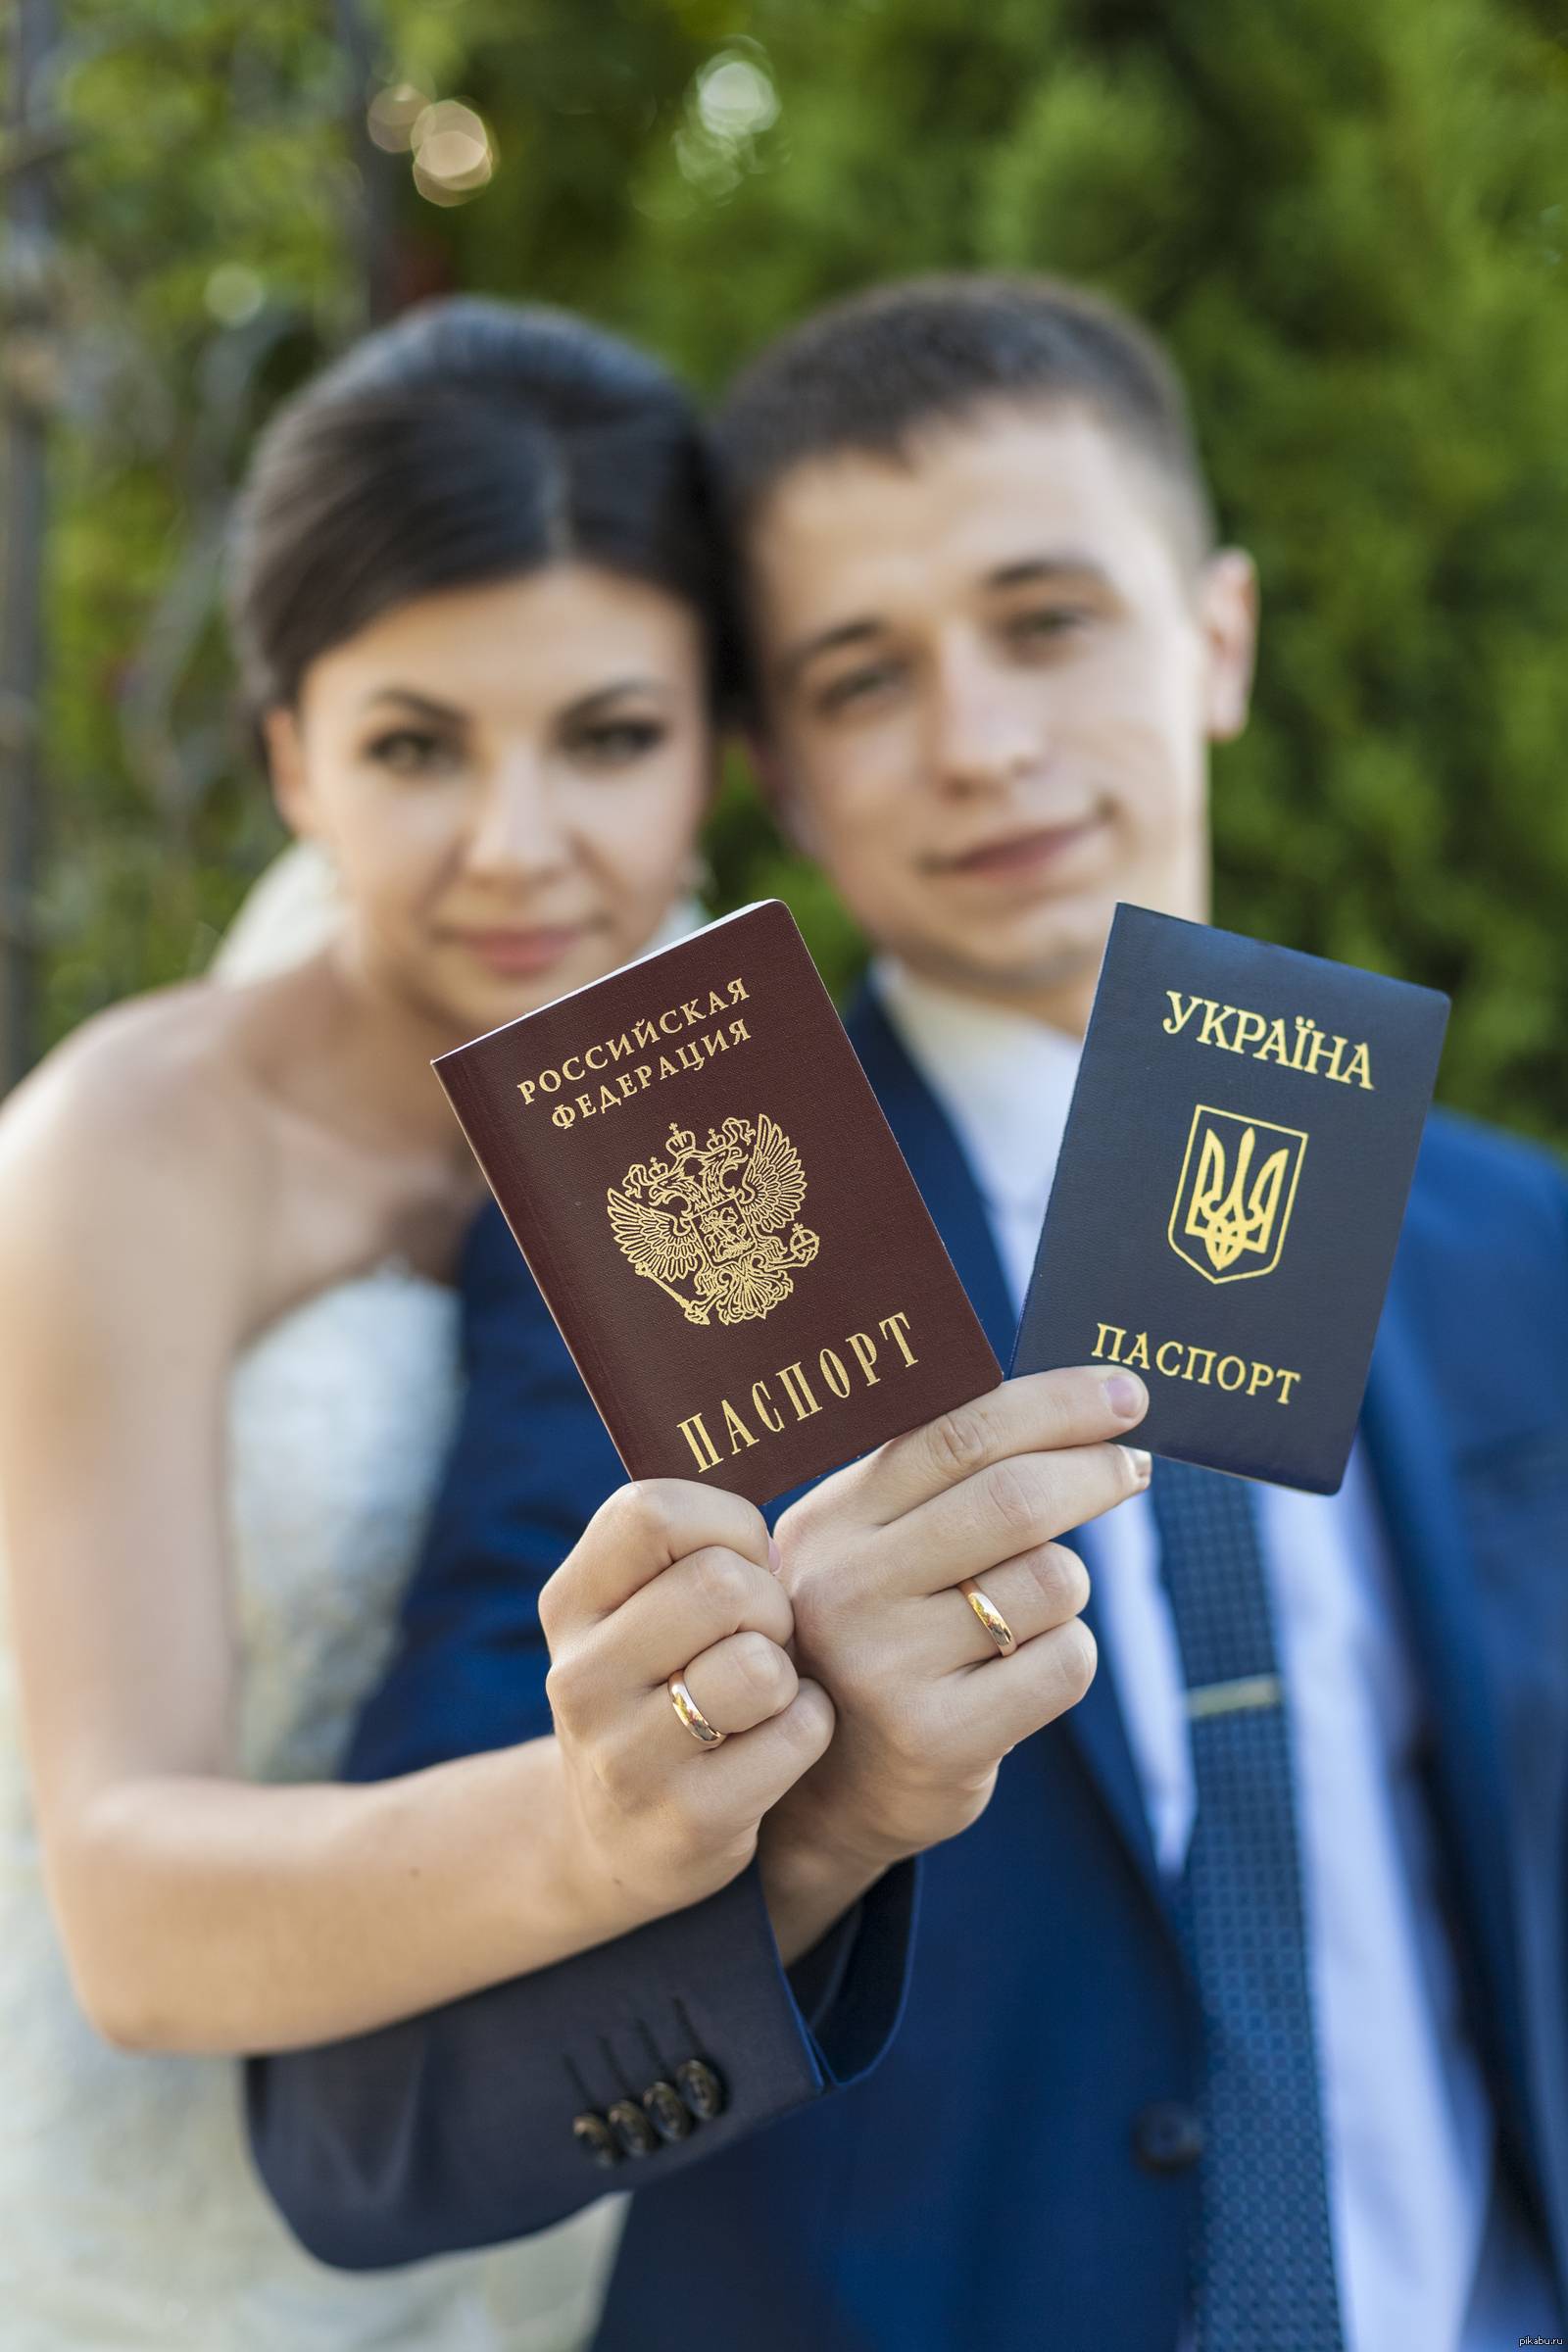 Получение гражданства рф для граждан украины